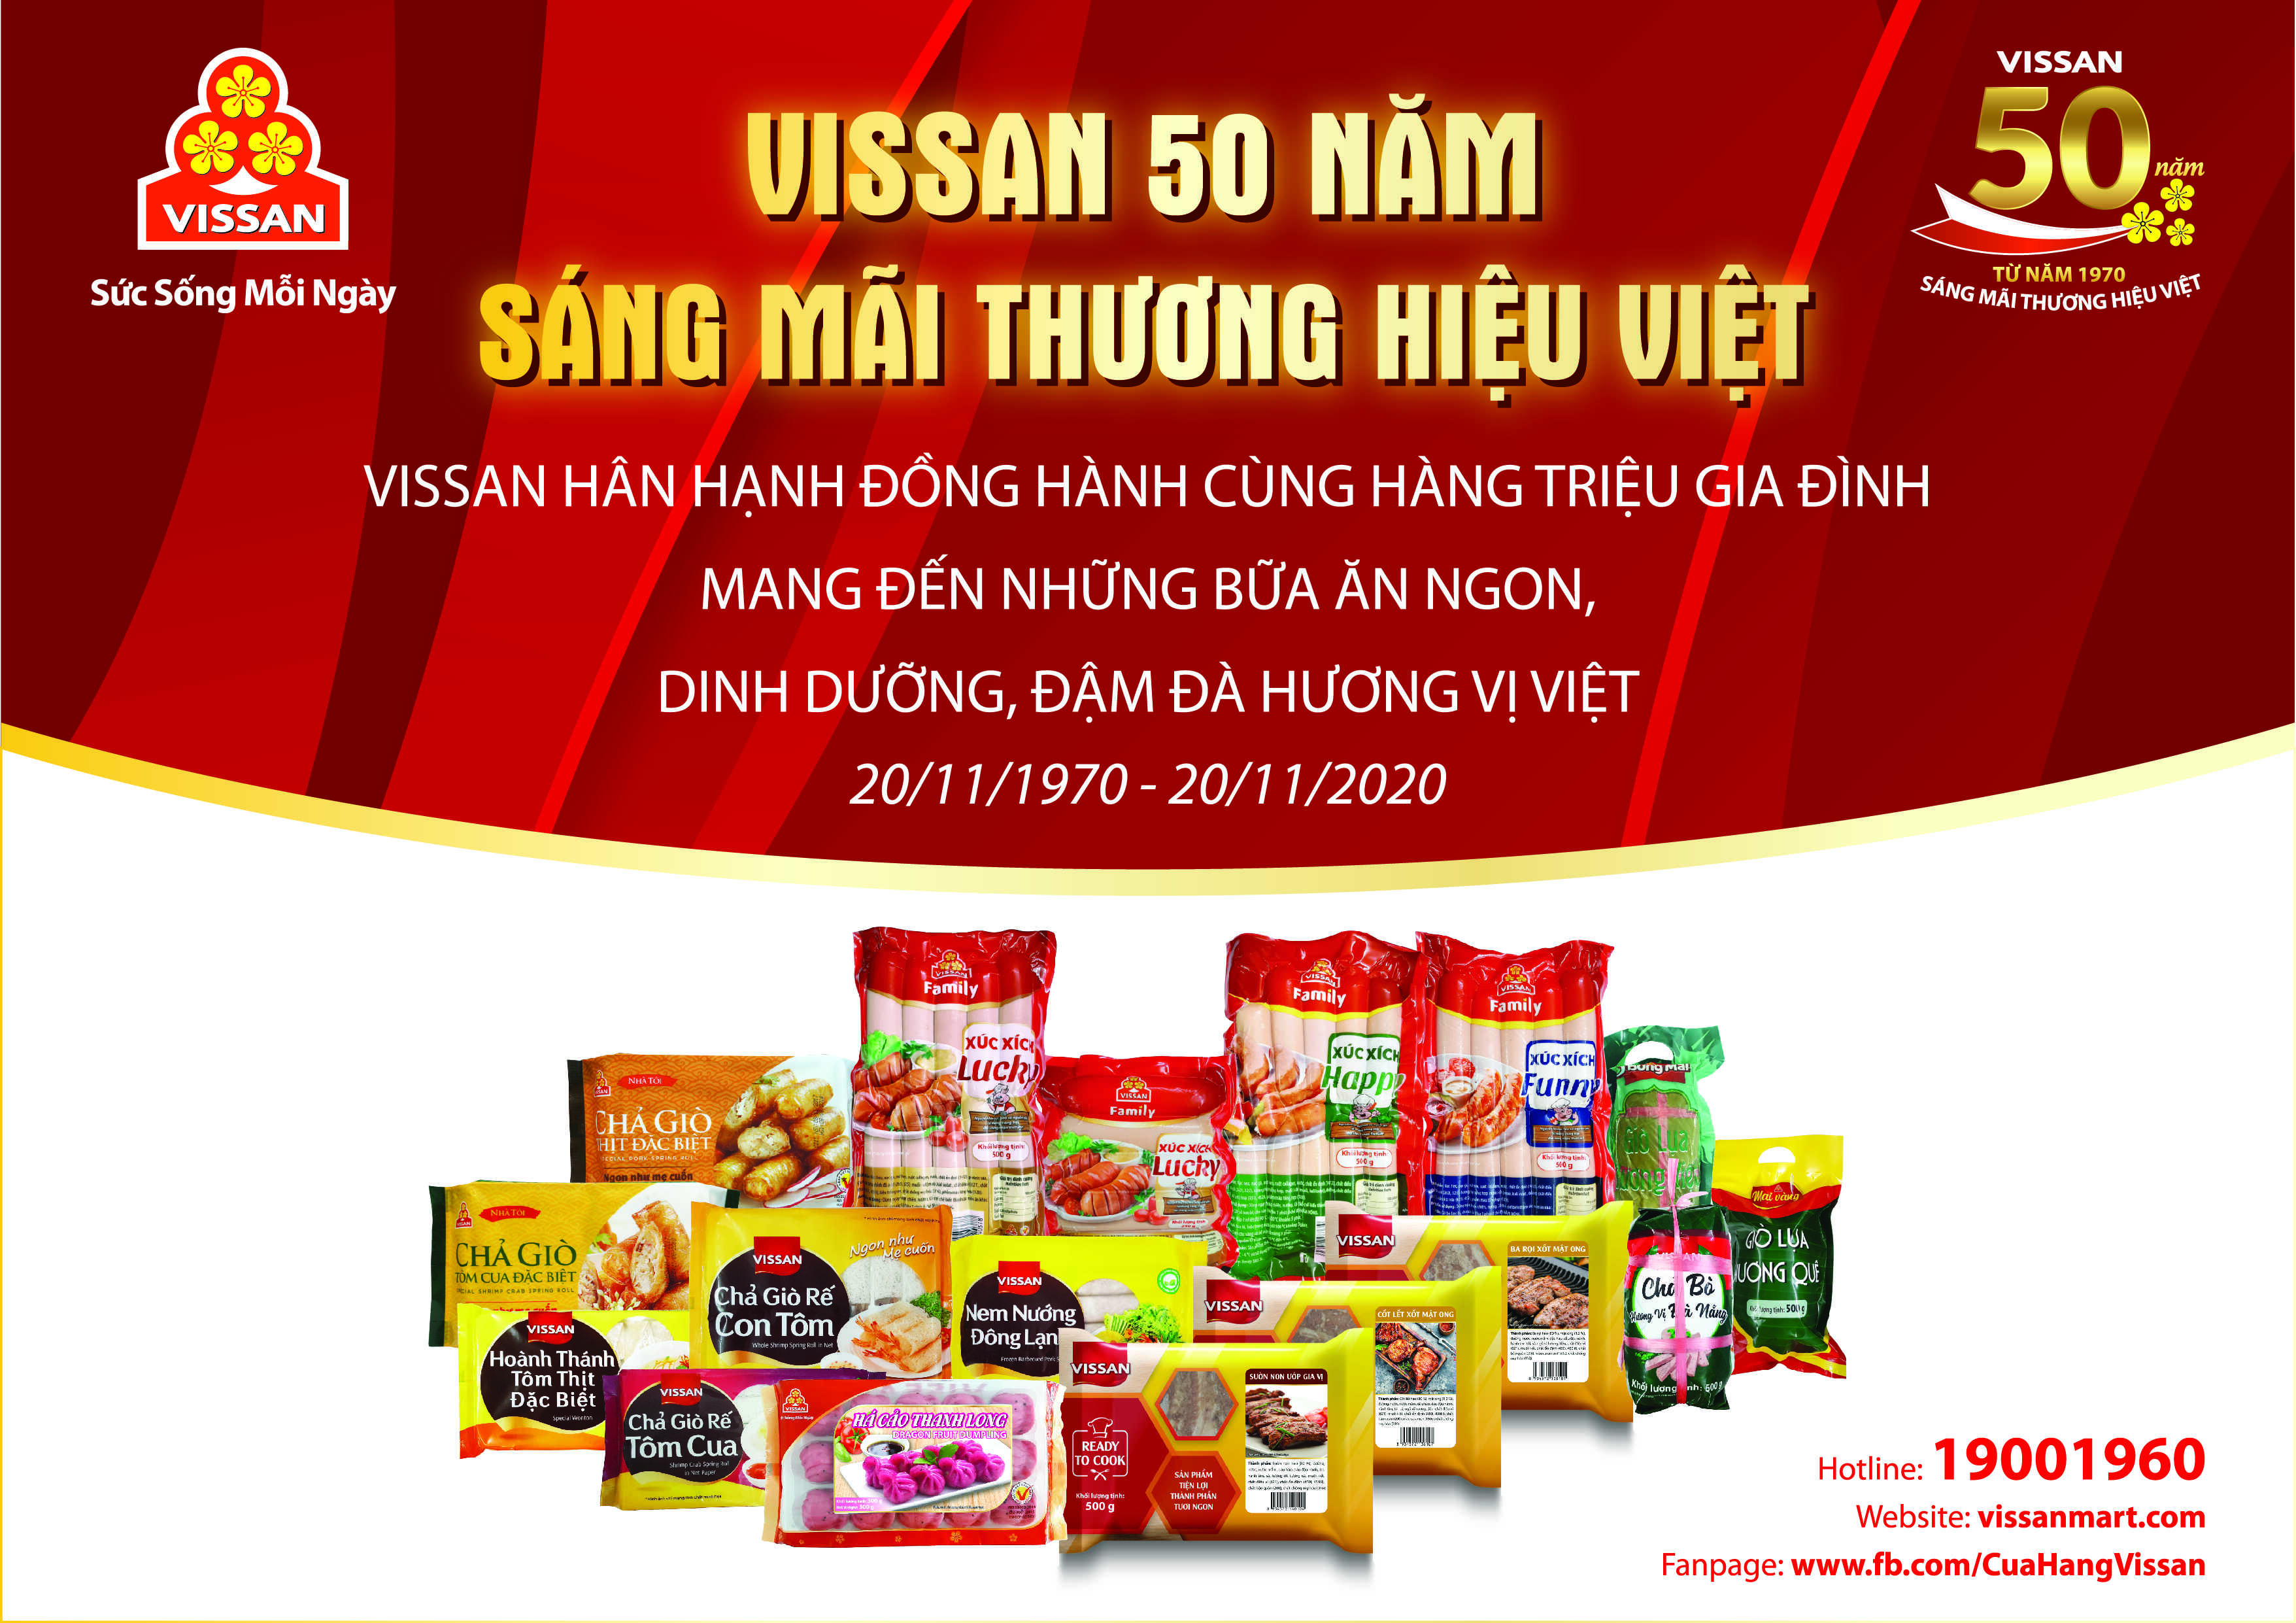 VISSAN - 50 Năm sáng mãi thương hiệu Việt